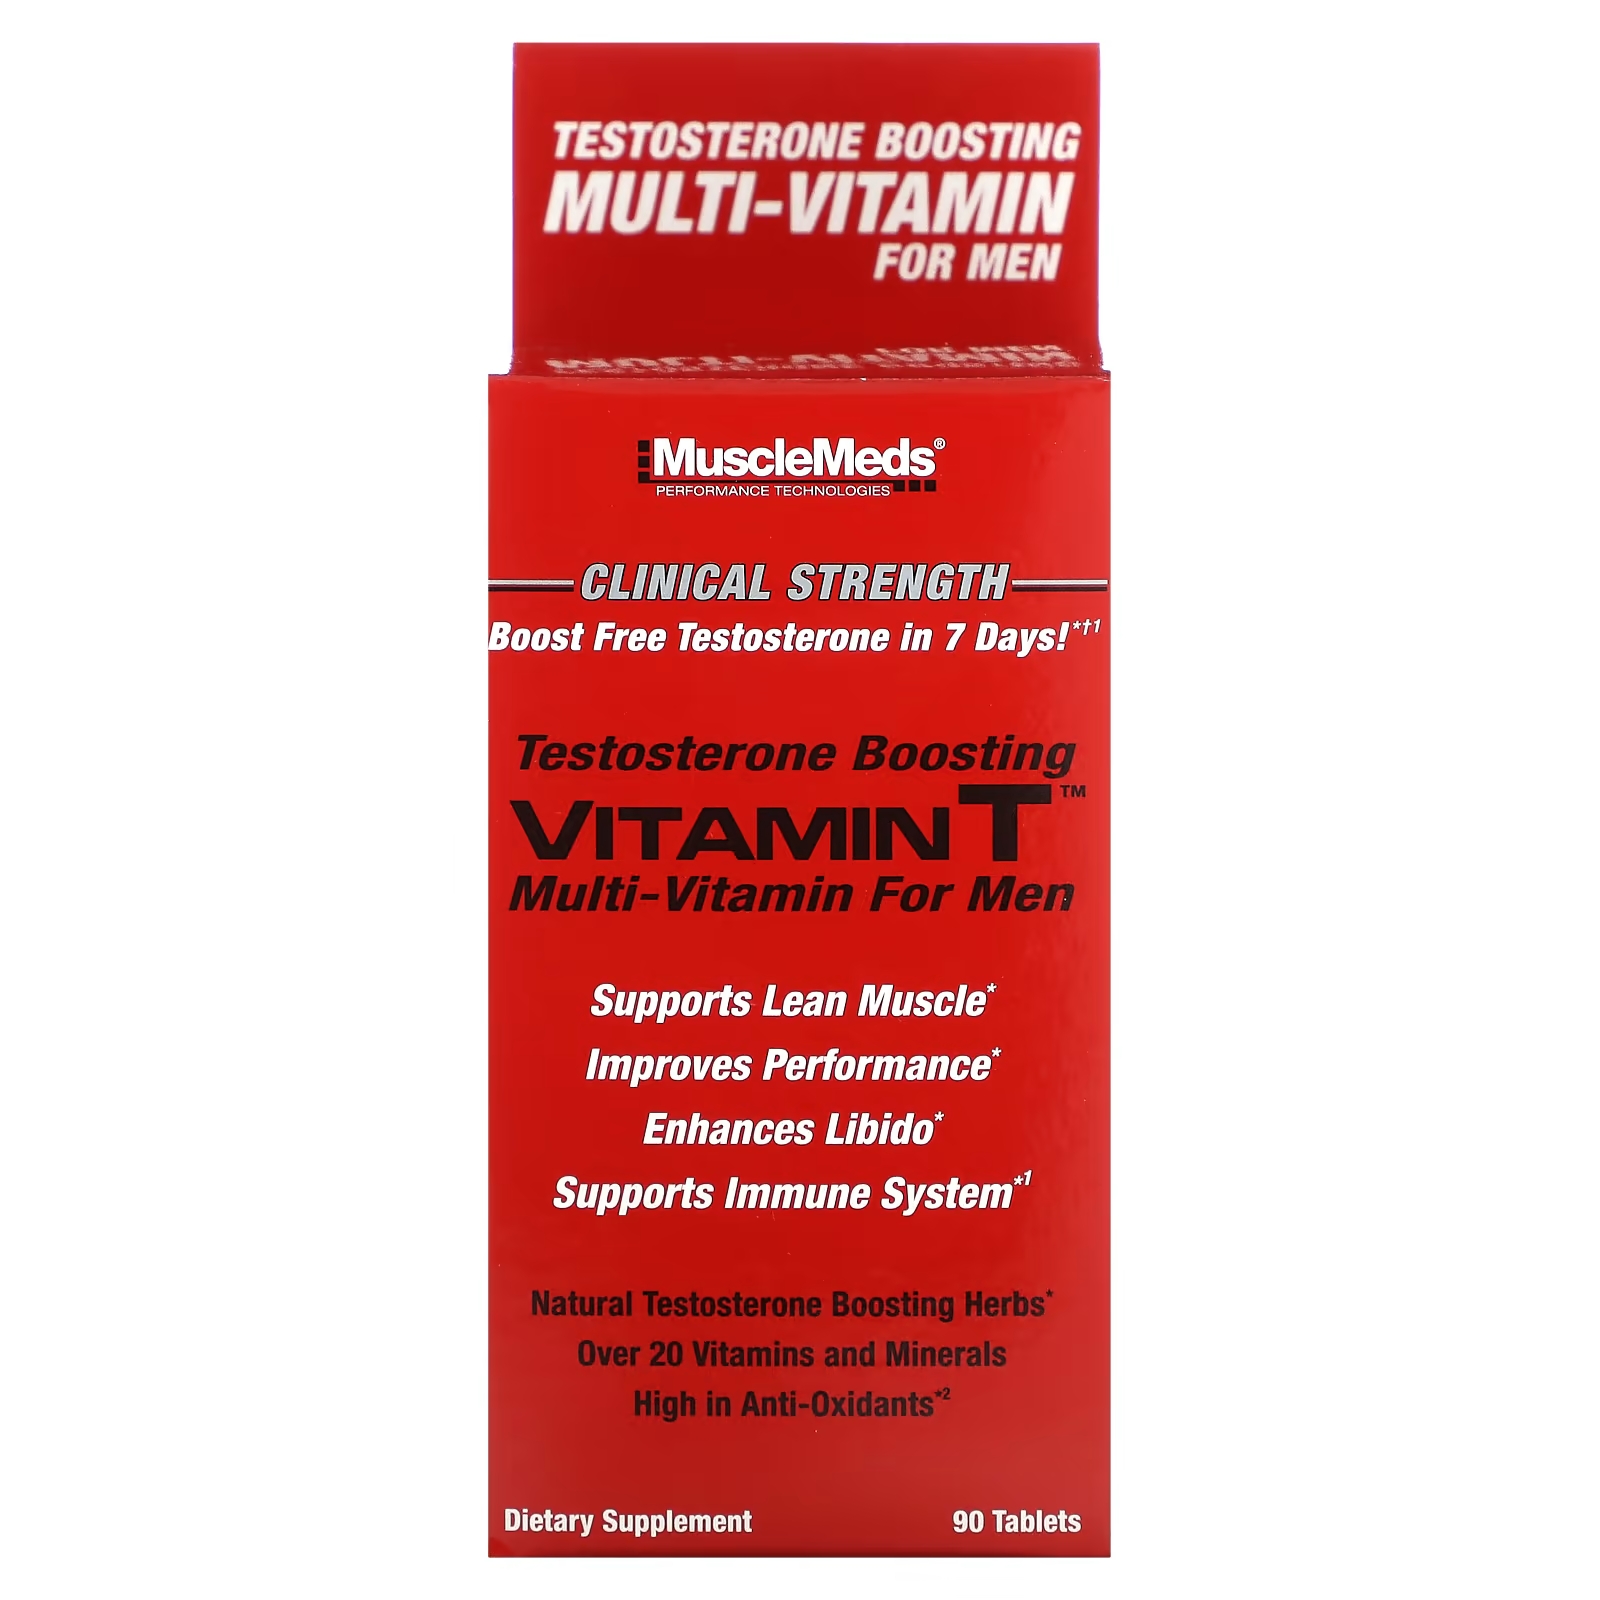 Мультивитамин для повышения тестостерона с витамином Т MuscleMeds, 90 таблеток витамины антиоксиданты минералы awochactive куркумин